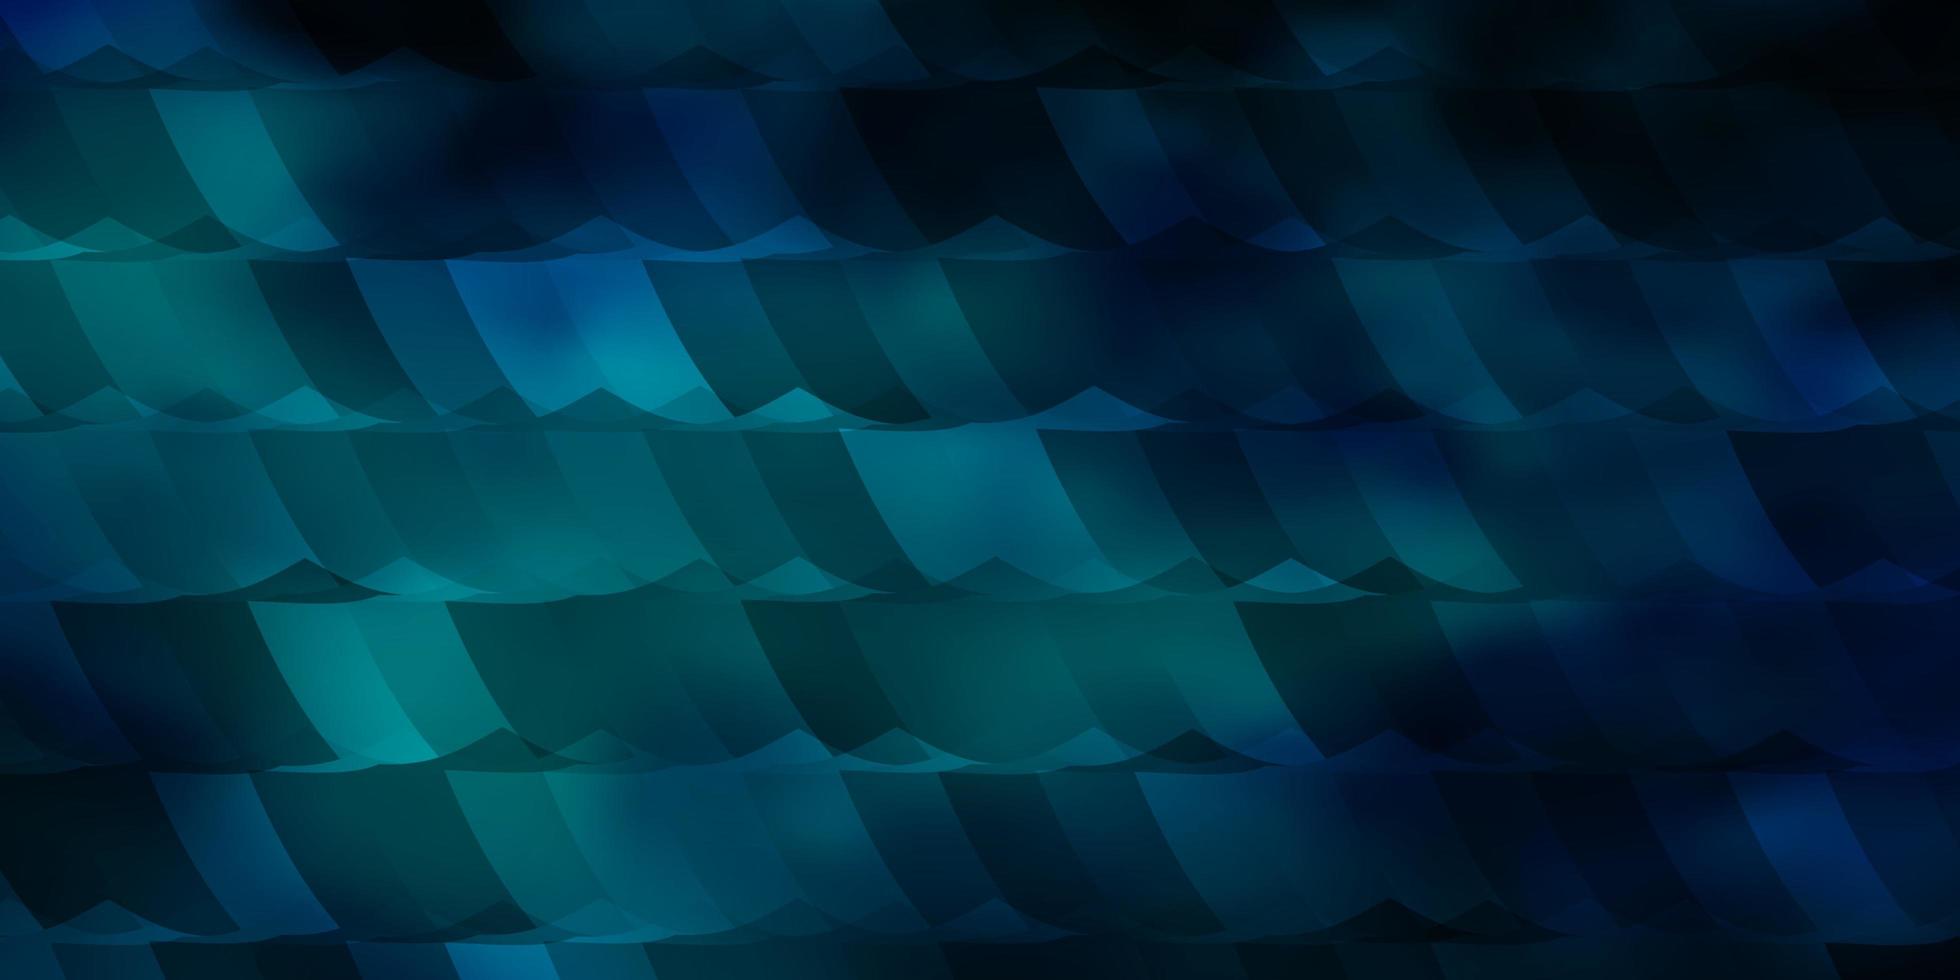 trama vettoriale blu scuro con esagoni colorati